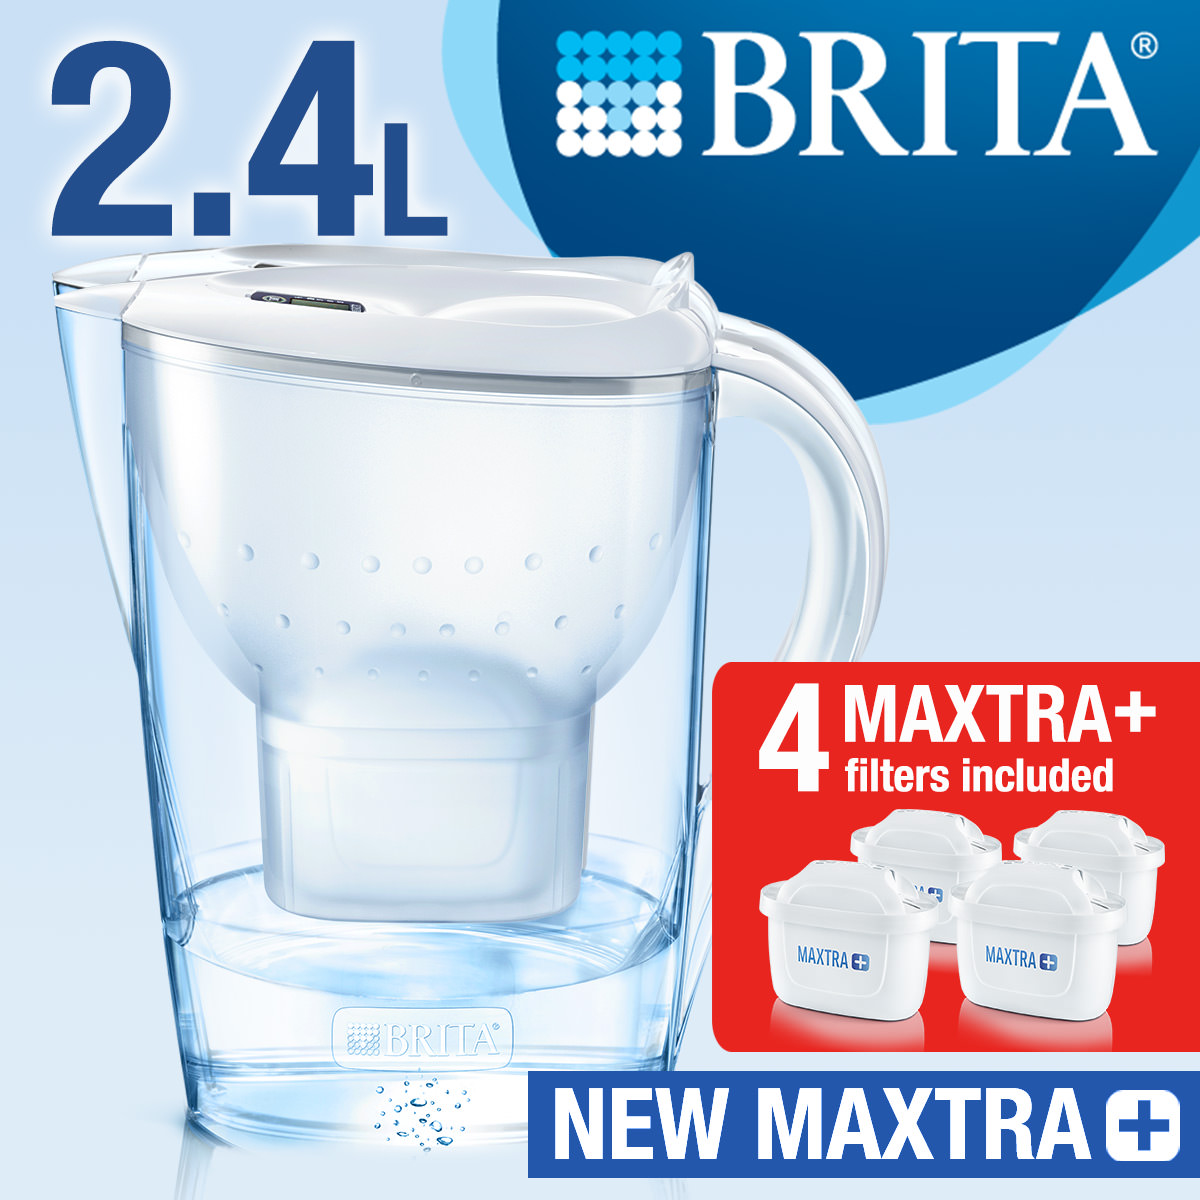 Brita Marella Cool white 2.4L